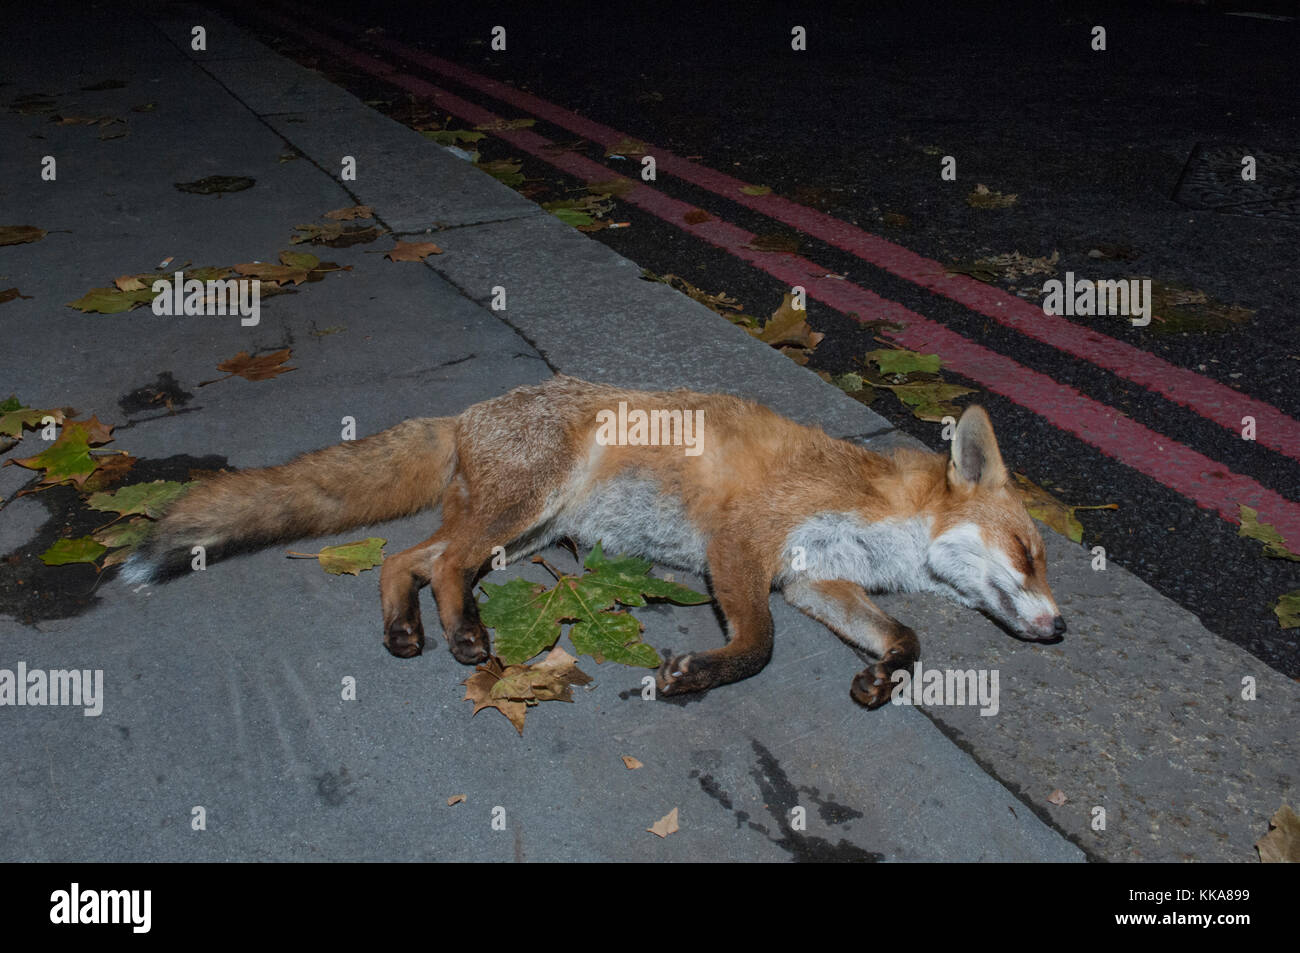 Urbano, el zorro Vulpes vulpes, muertos en la carretera en coche, Londres, Reino Unido. Foto de stock